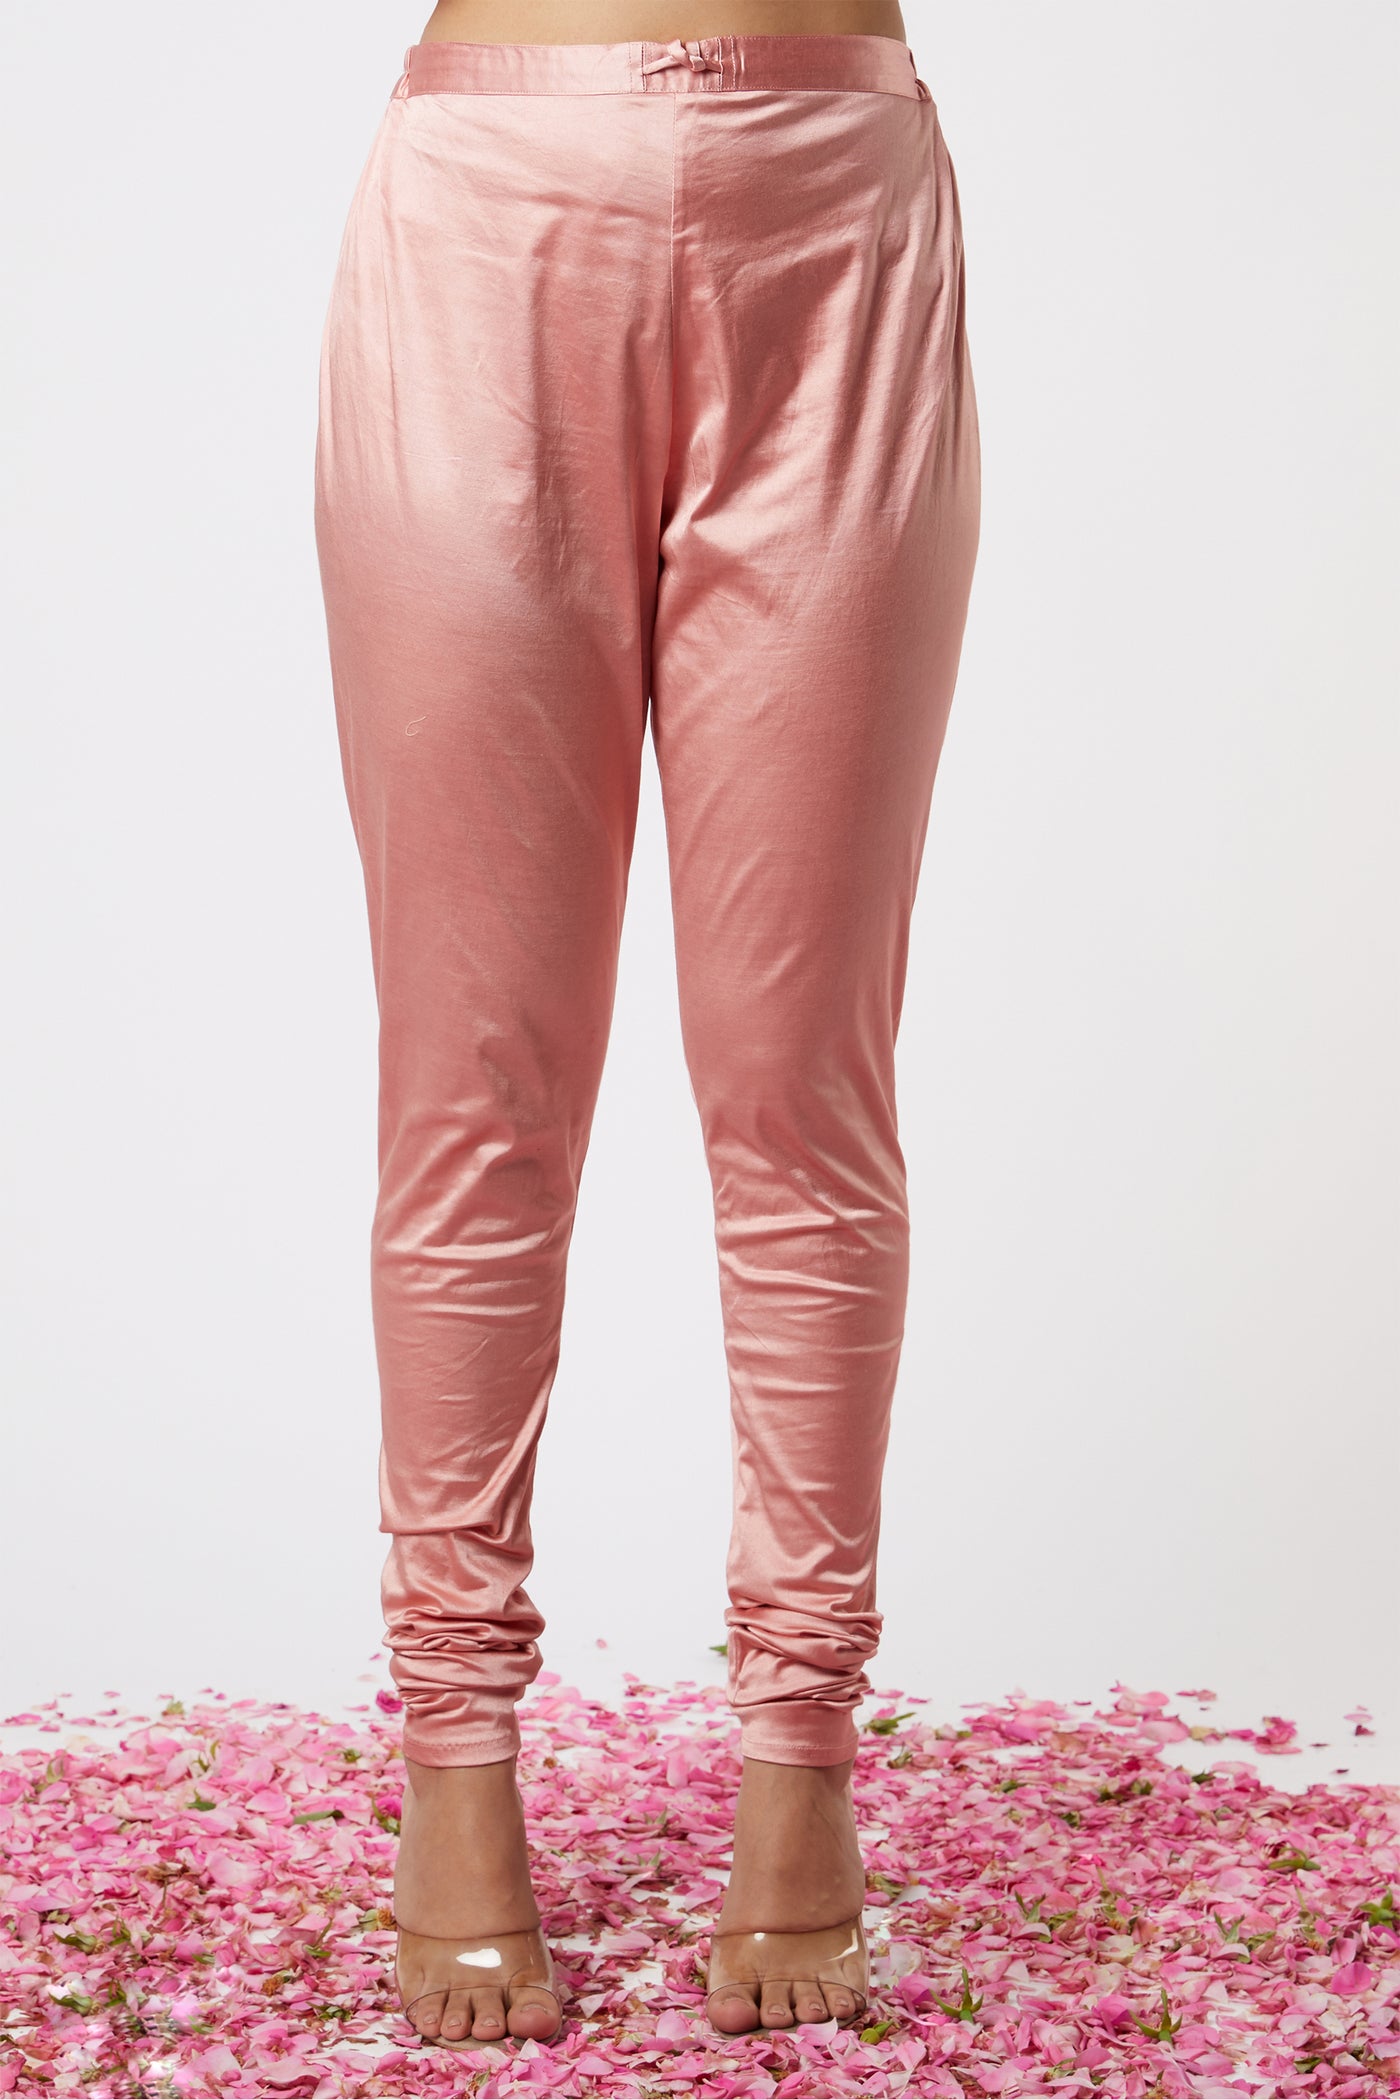 Gopi vaid Noor Mughal AG Set Pink festive indian designer wear online shopping melange singapore